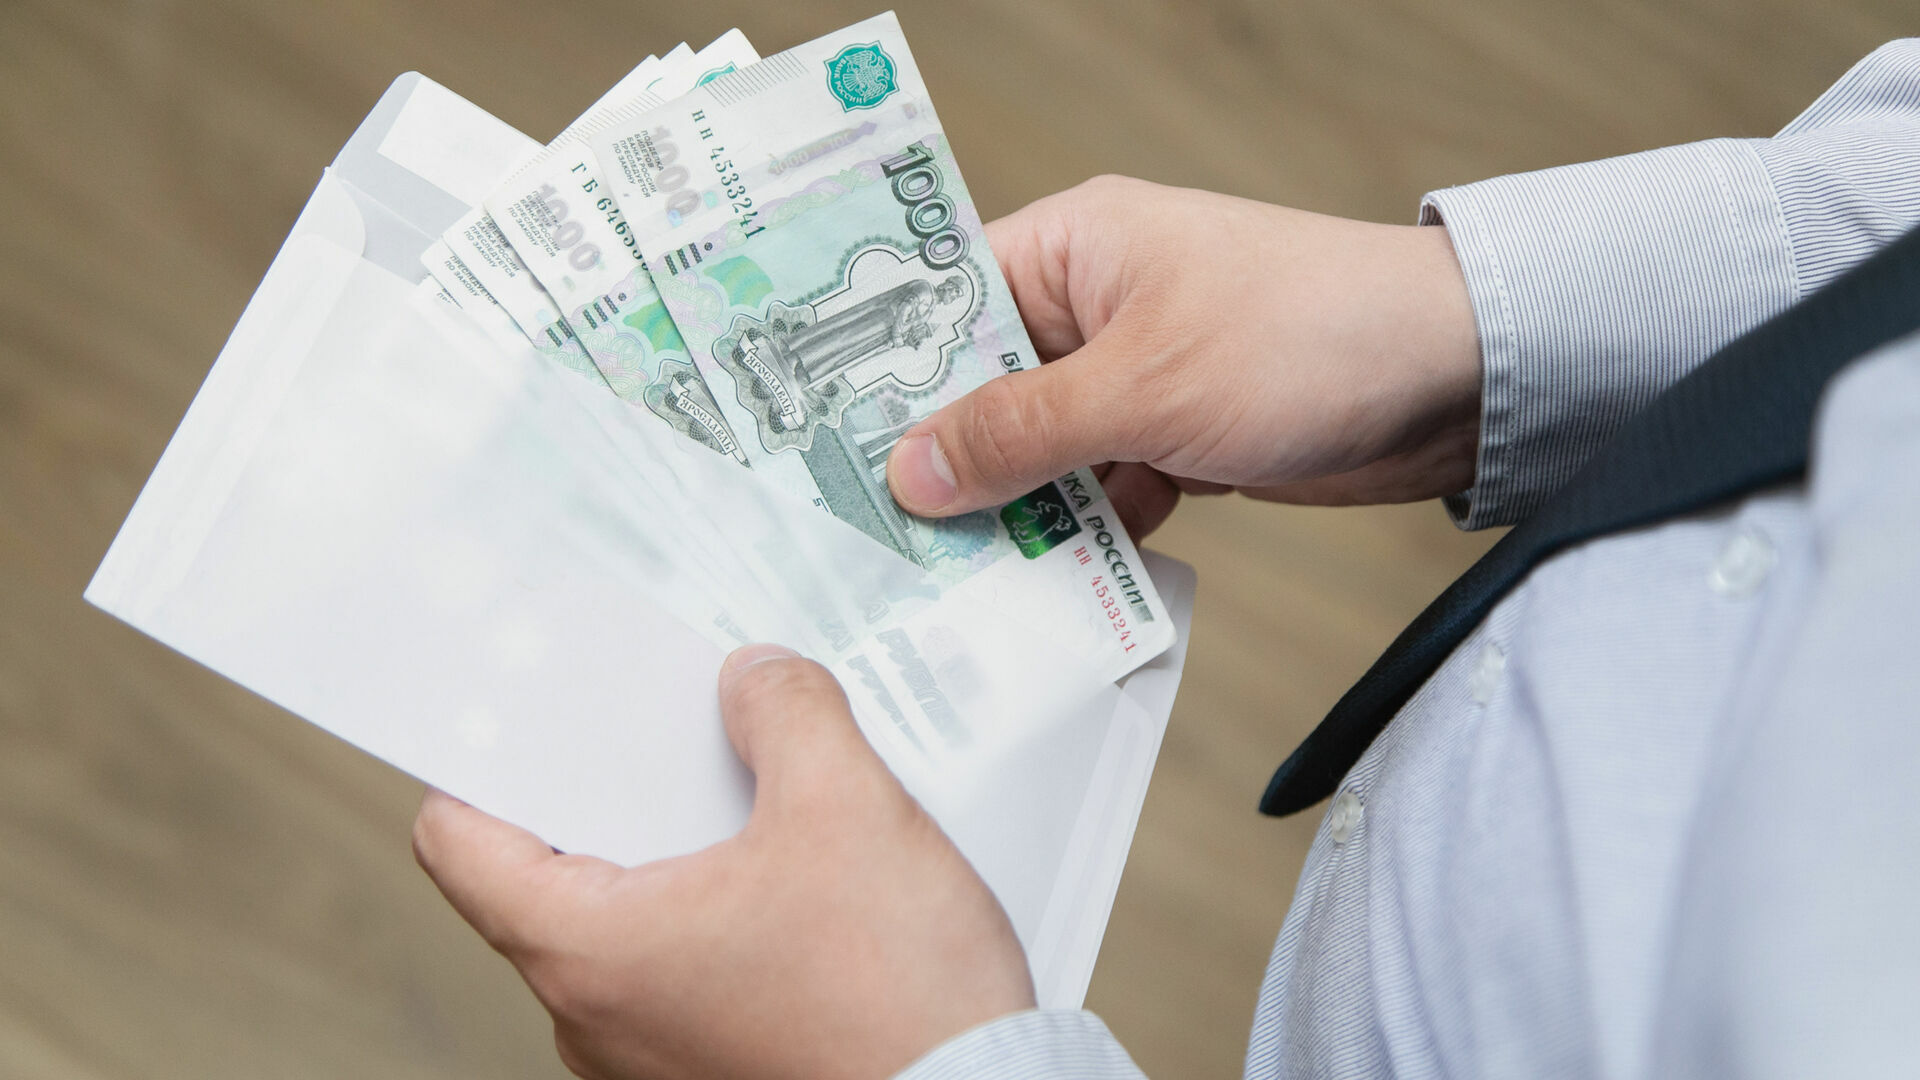 О готовности получать зарплату в конверте заявили 44% россиян